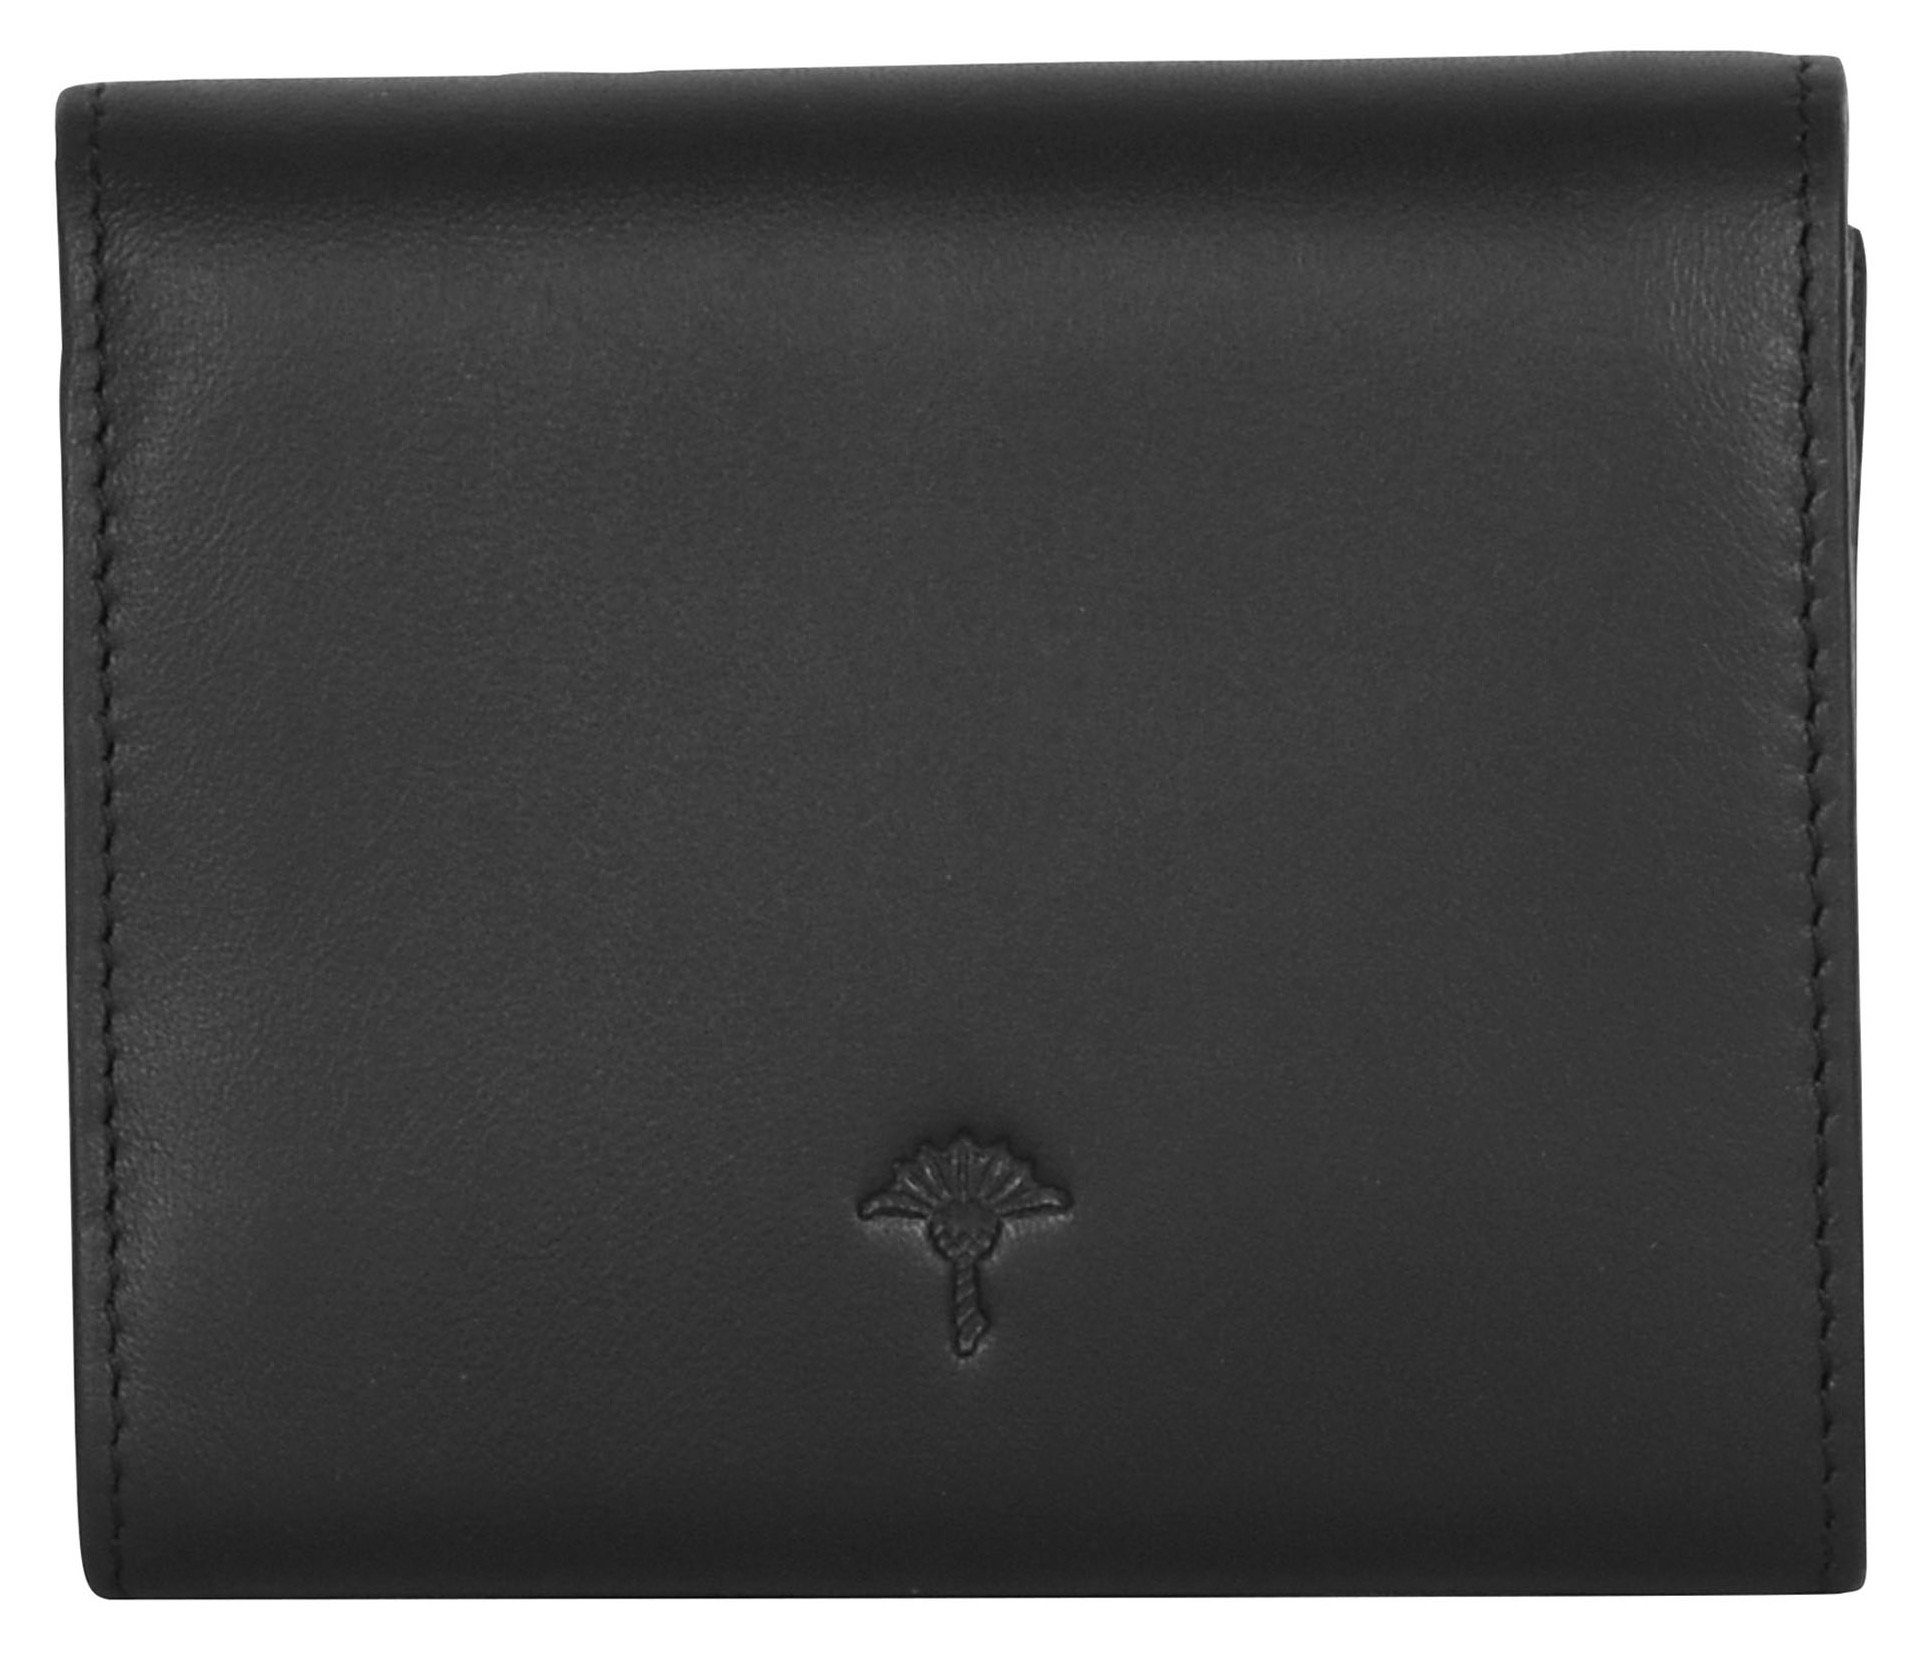 schwarz 1.0 sofisticato Design purse Geldbörse lina schlichtem in Joop! sh5f,